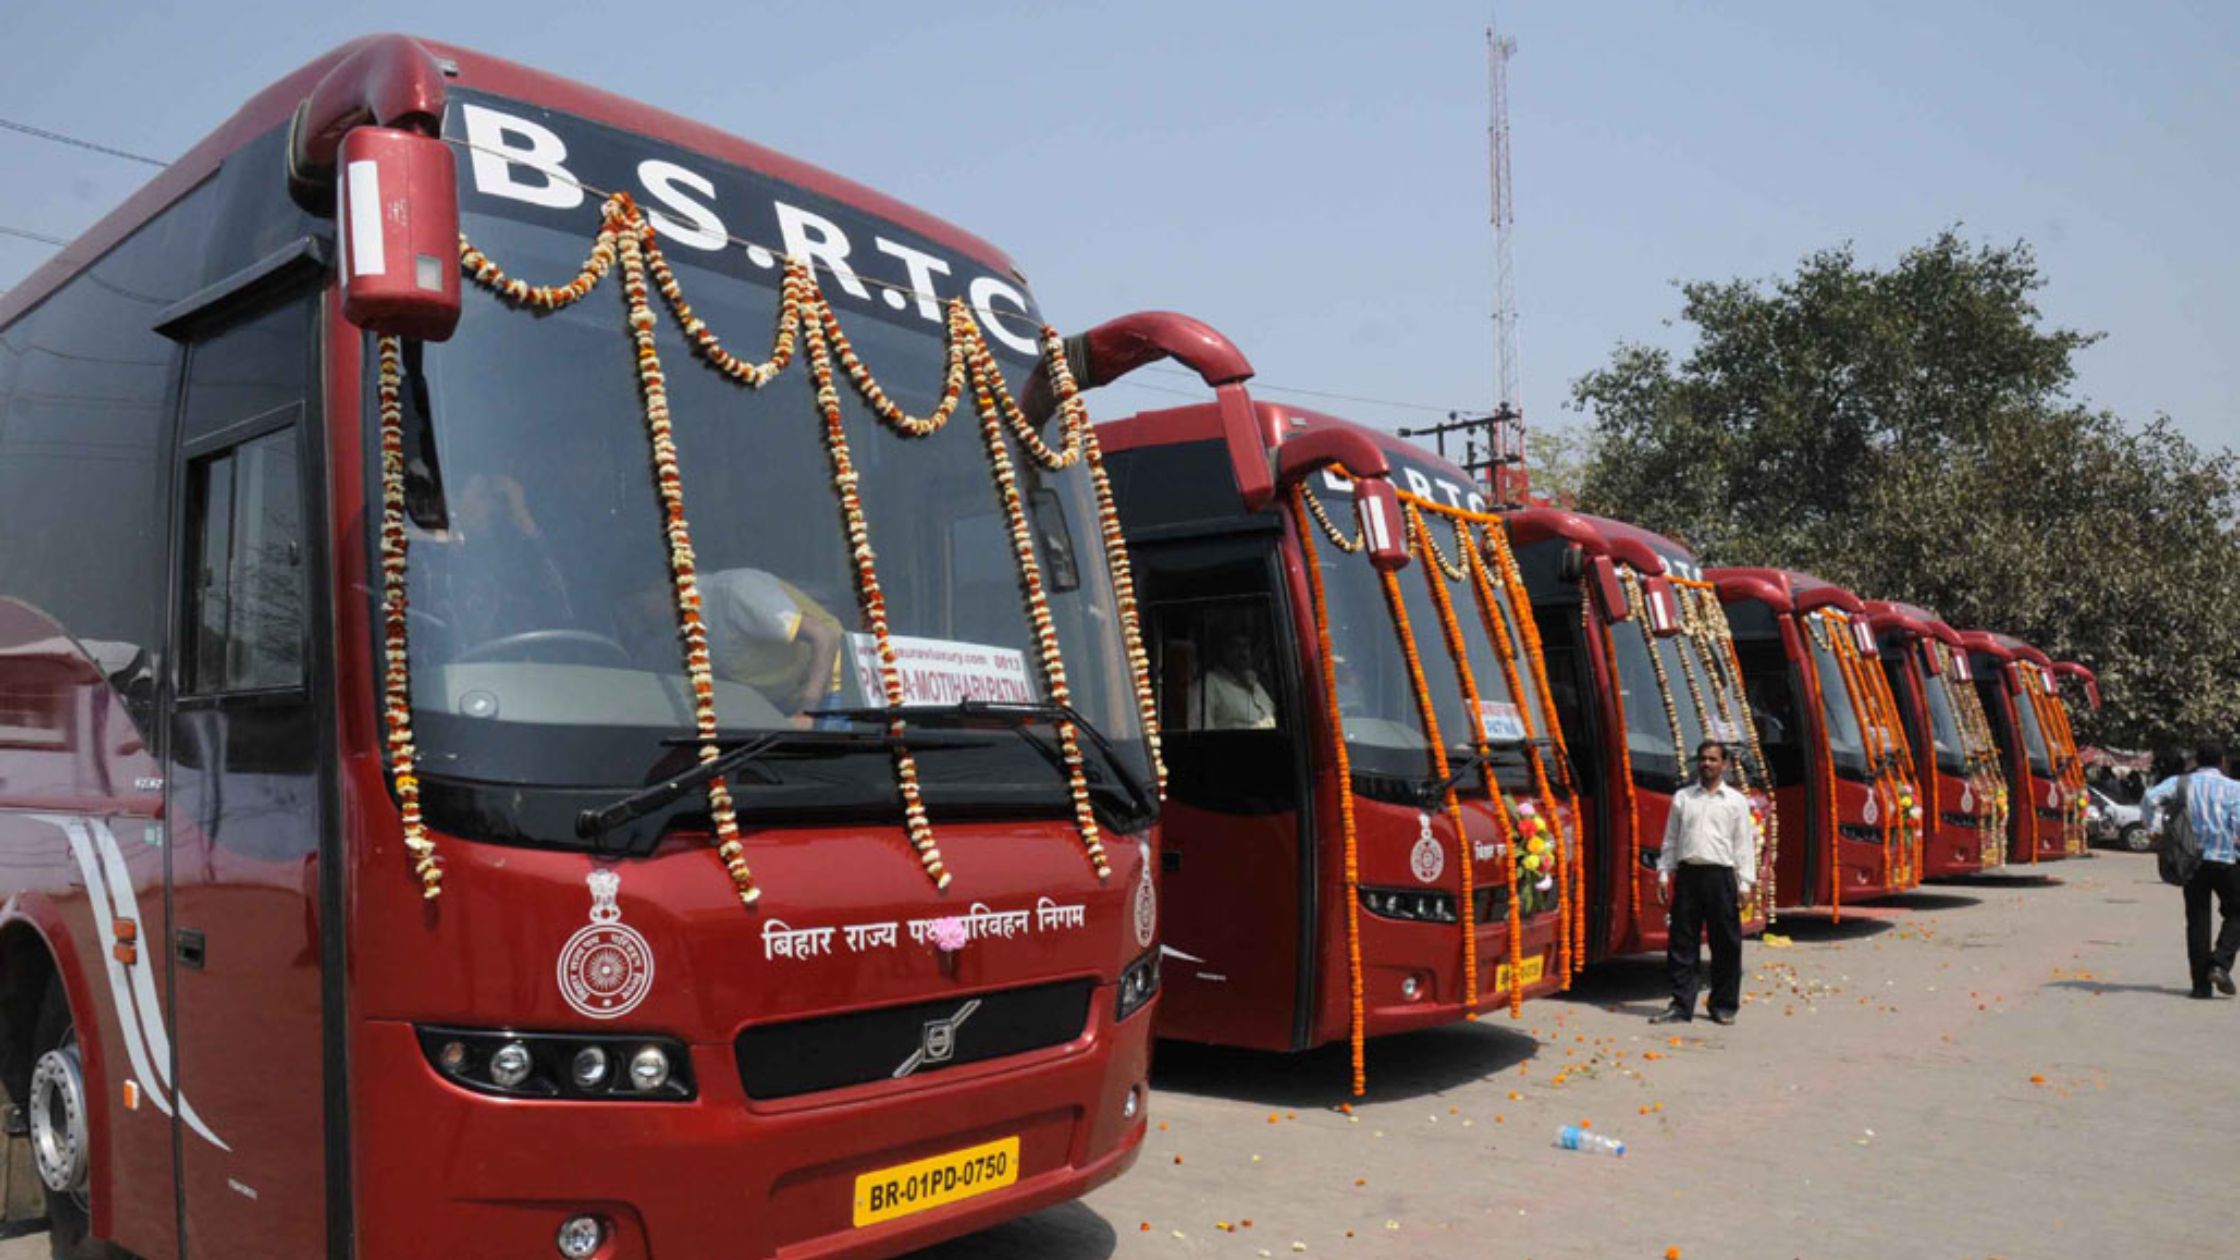 बिहार से दिल्ली जाने वालों के लिए खुशखबरी, बिहार परिवहन निगम की बसें चलेंगी